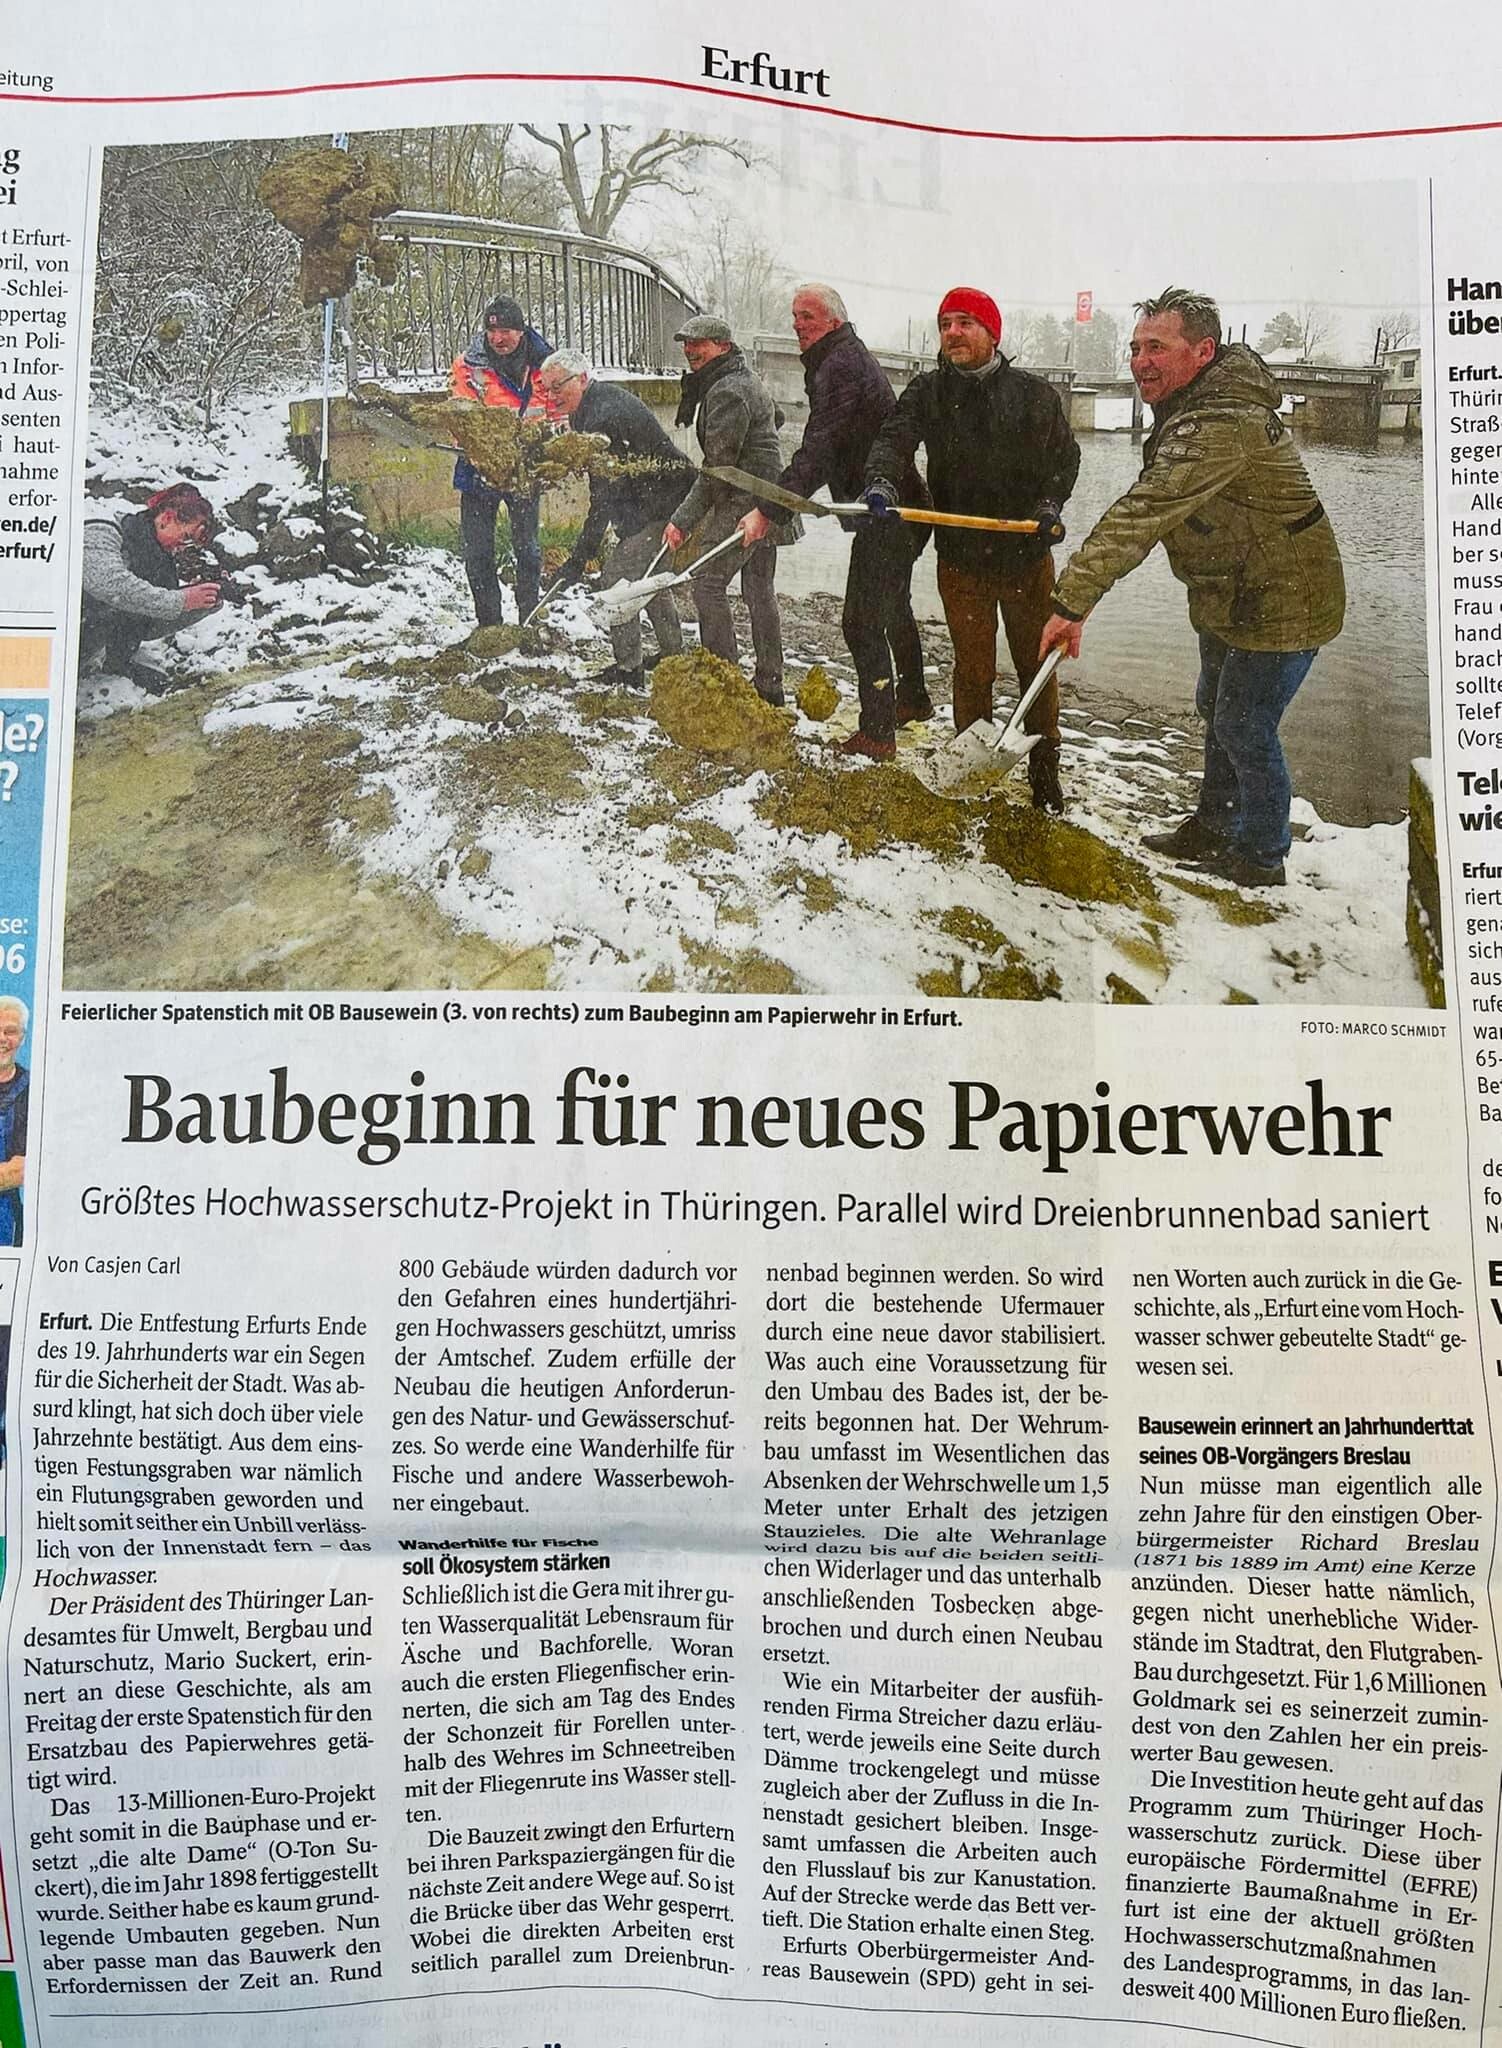 Presse: Baubeginn für neues Papierwehr, Bild: TA: 2.4.2022; Text: Casjen Carl, Foto: Marco Schmidt